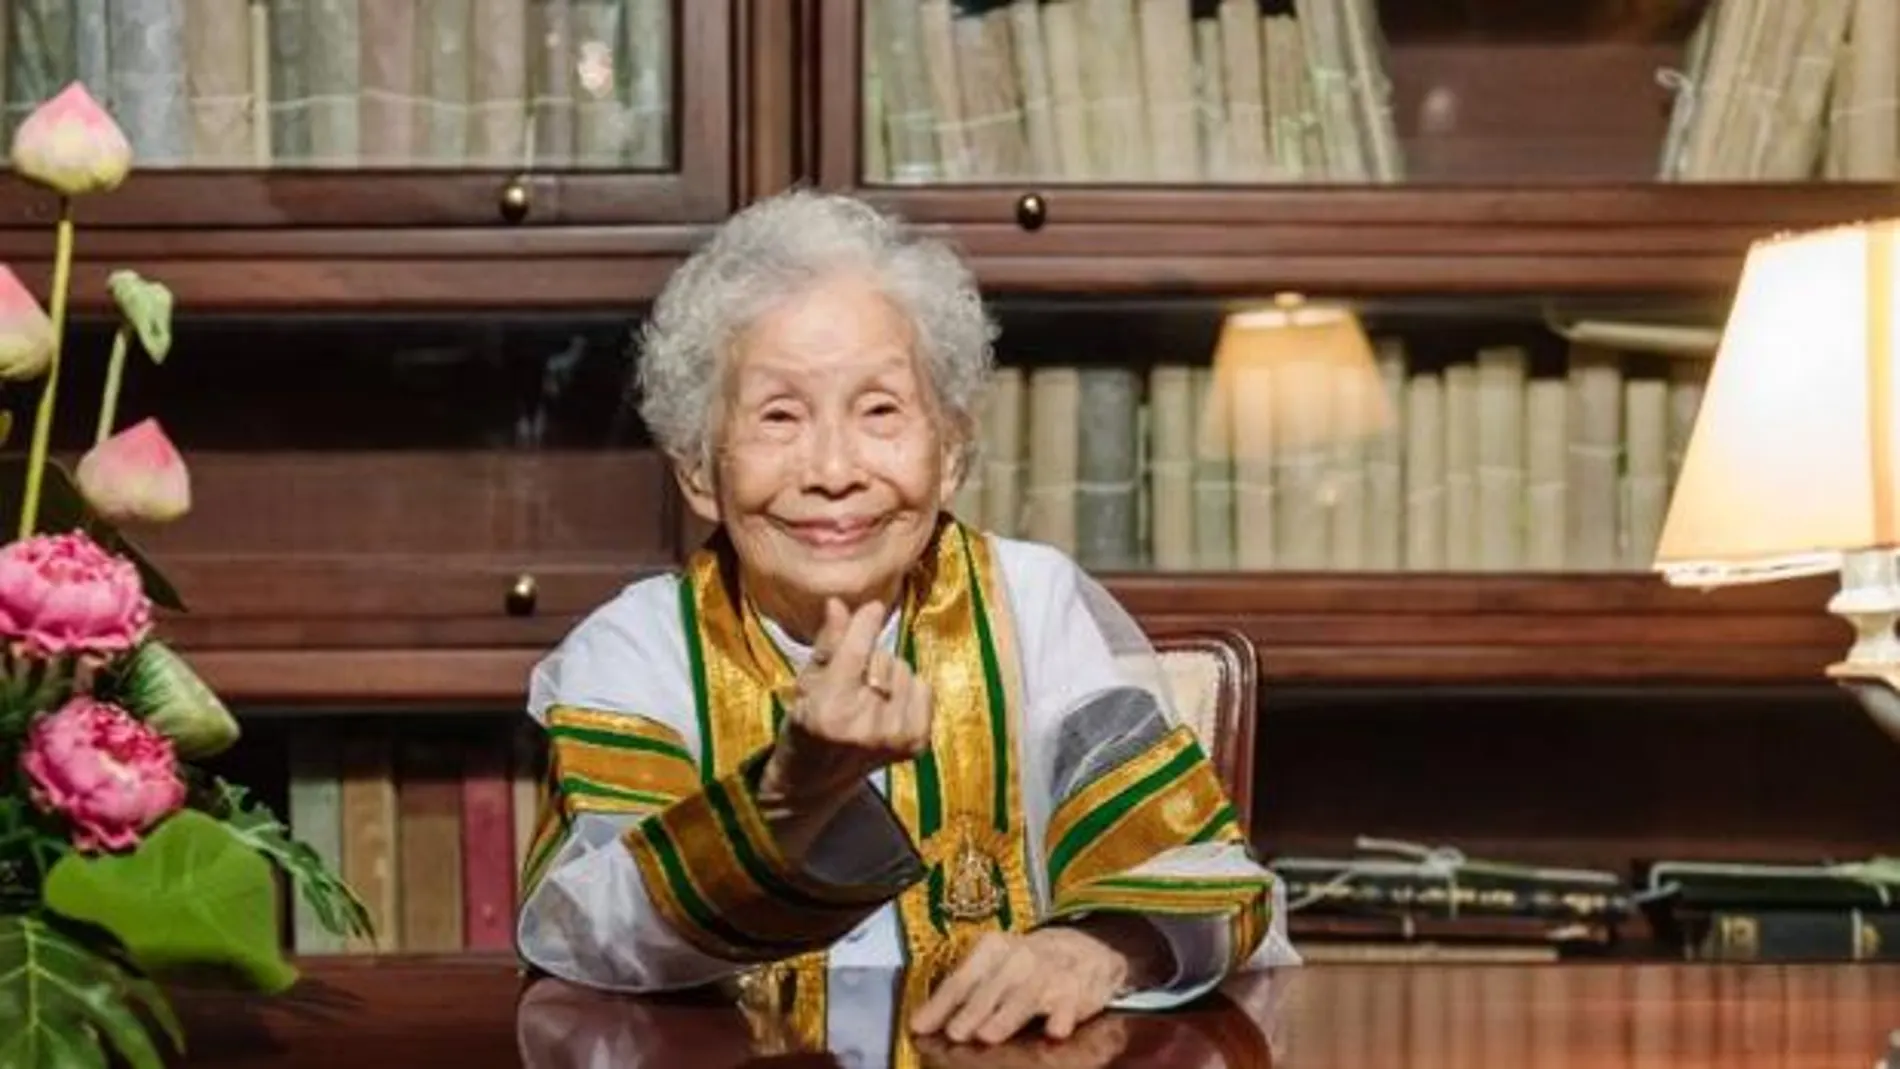 "Si no estudias o lees, no vas a aprender nada", una abuela de 91 años consigue graduarse en la universidad 